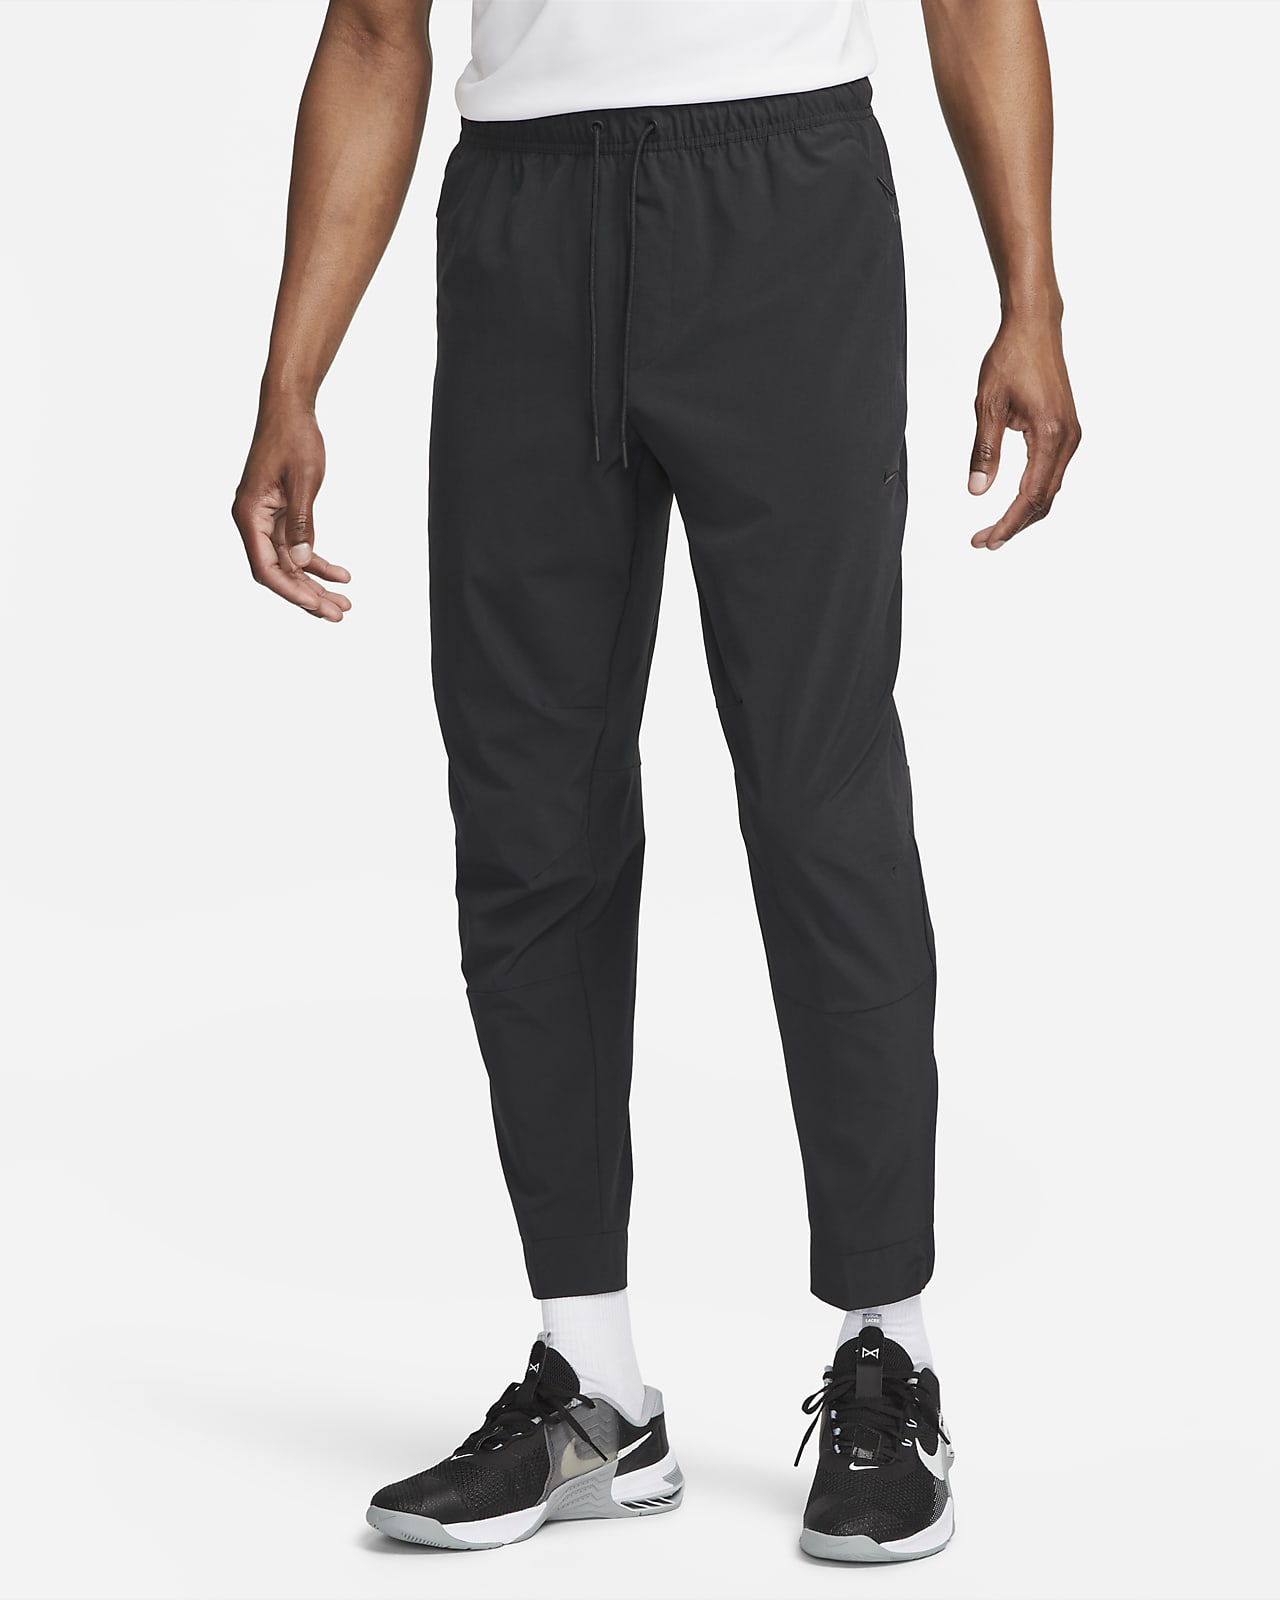 Nike Unlimited Pantalons Dri-FIT versàtils amb cremalleres a les vores - Home